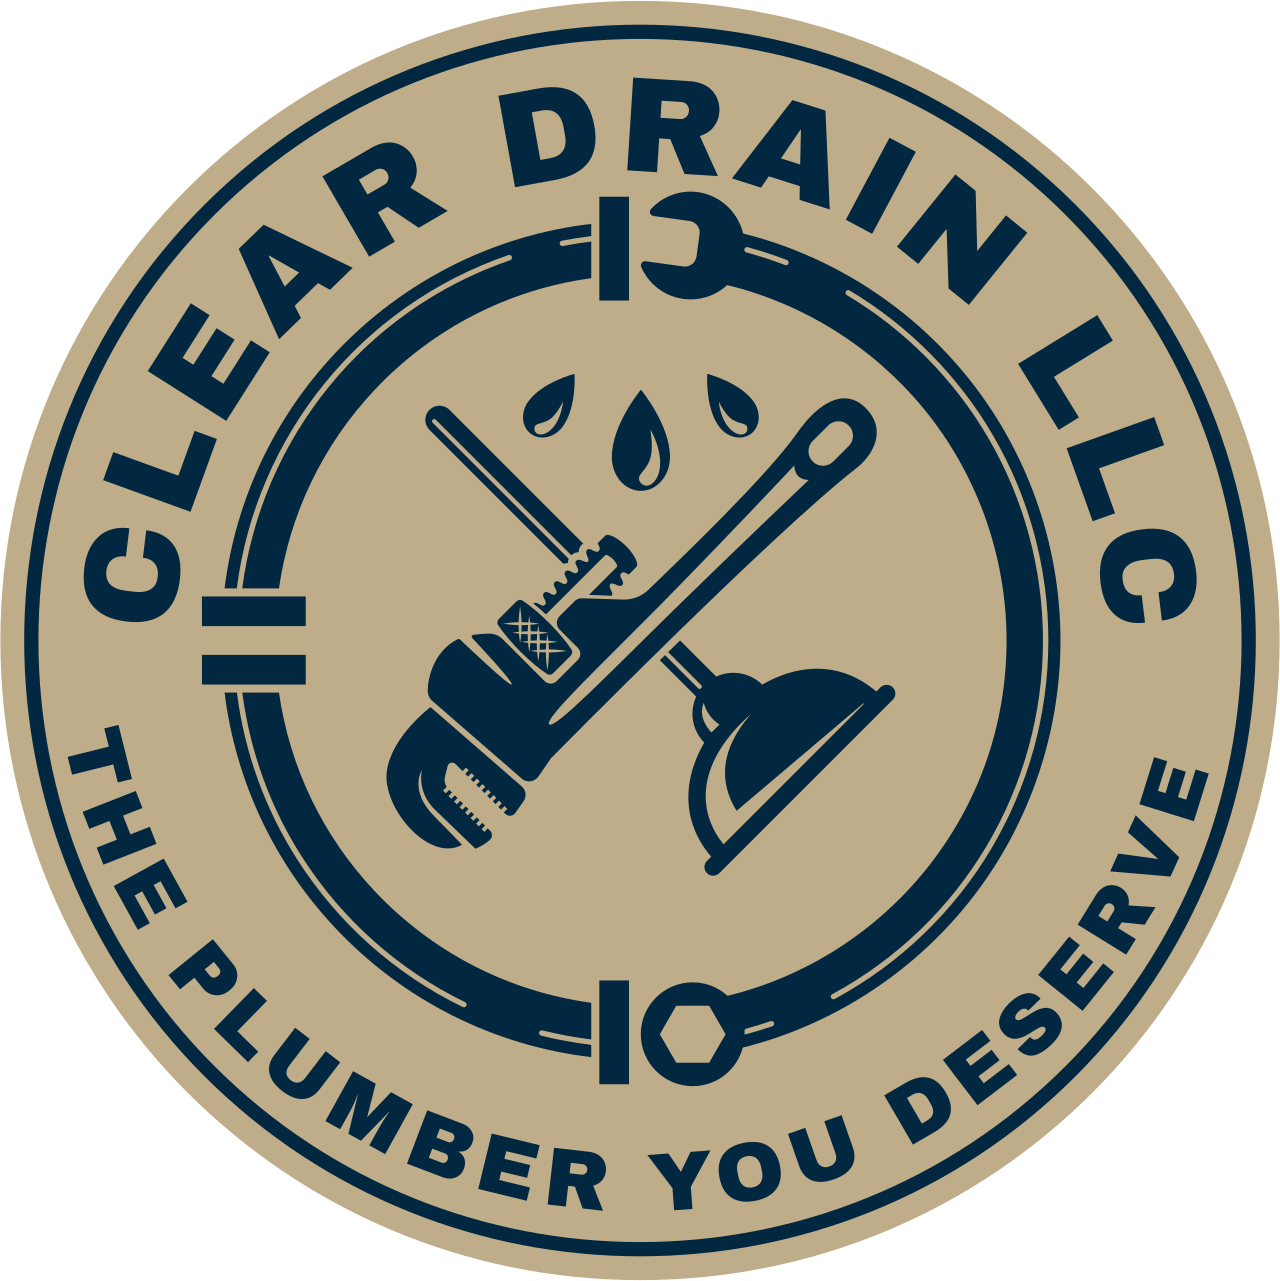 CLEAR DRAIN LLC's logo